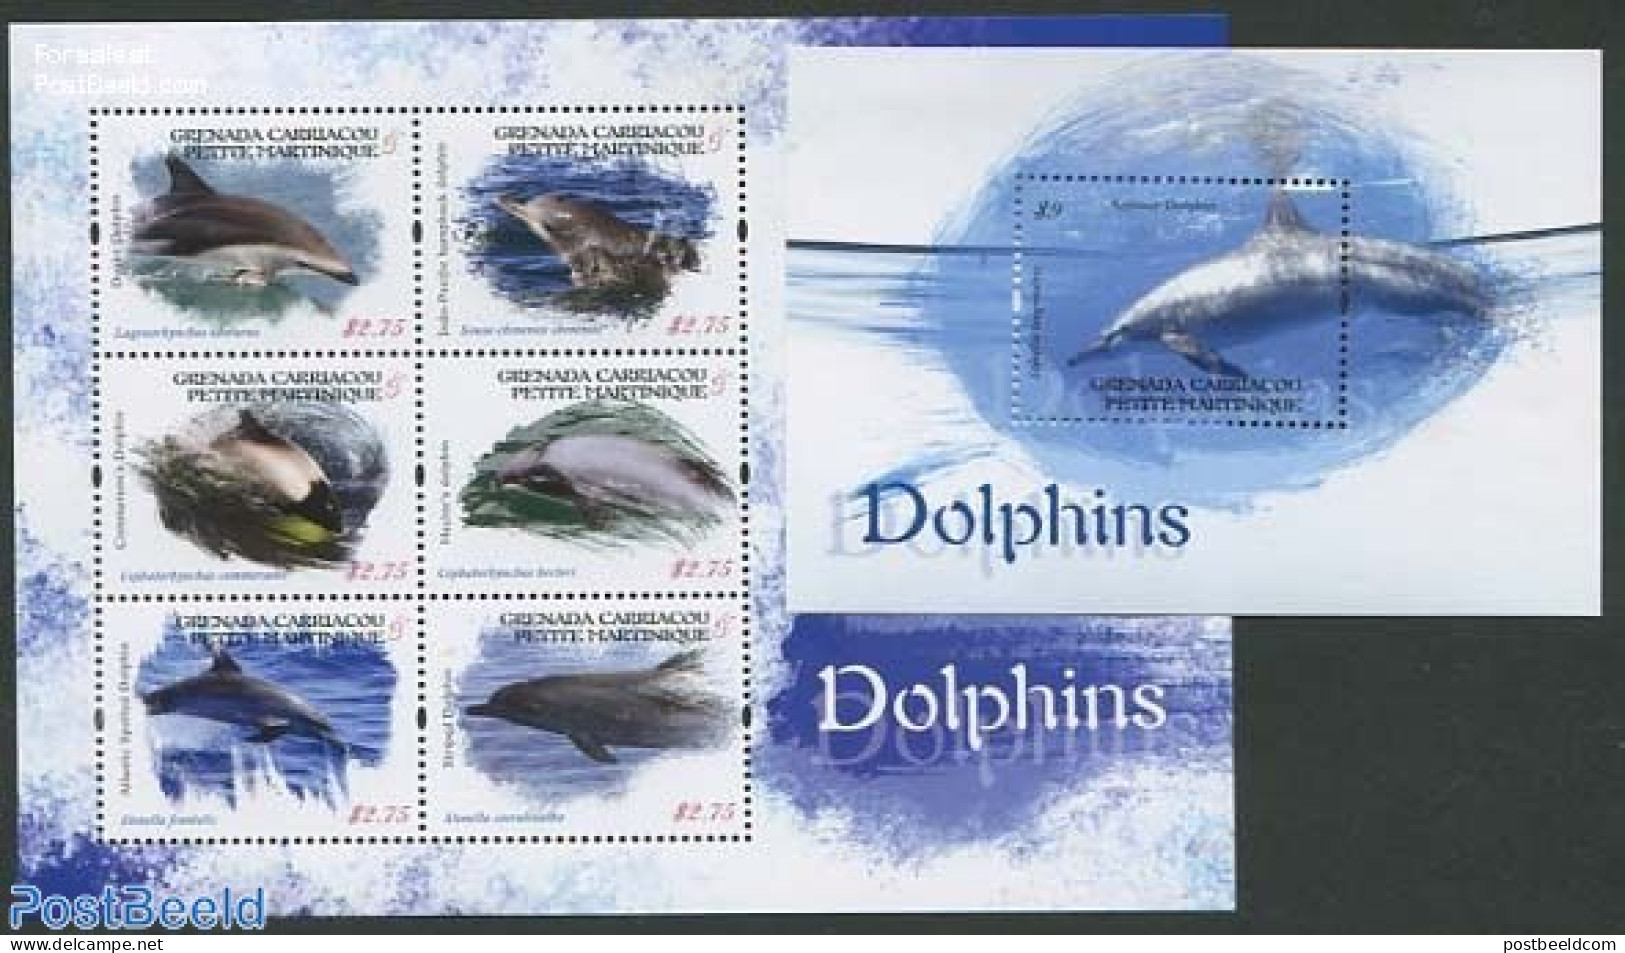 Grenada Grenadines 2013 Petite Martinique, Dolphins 2 S/s, Mint NH, Nature - Sea Mammals - Grenade (1974-...)